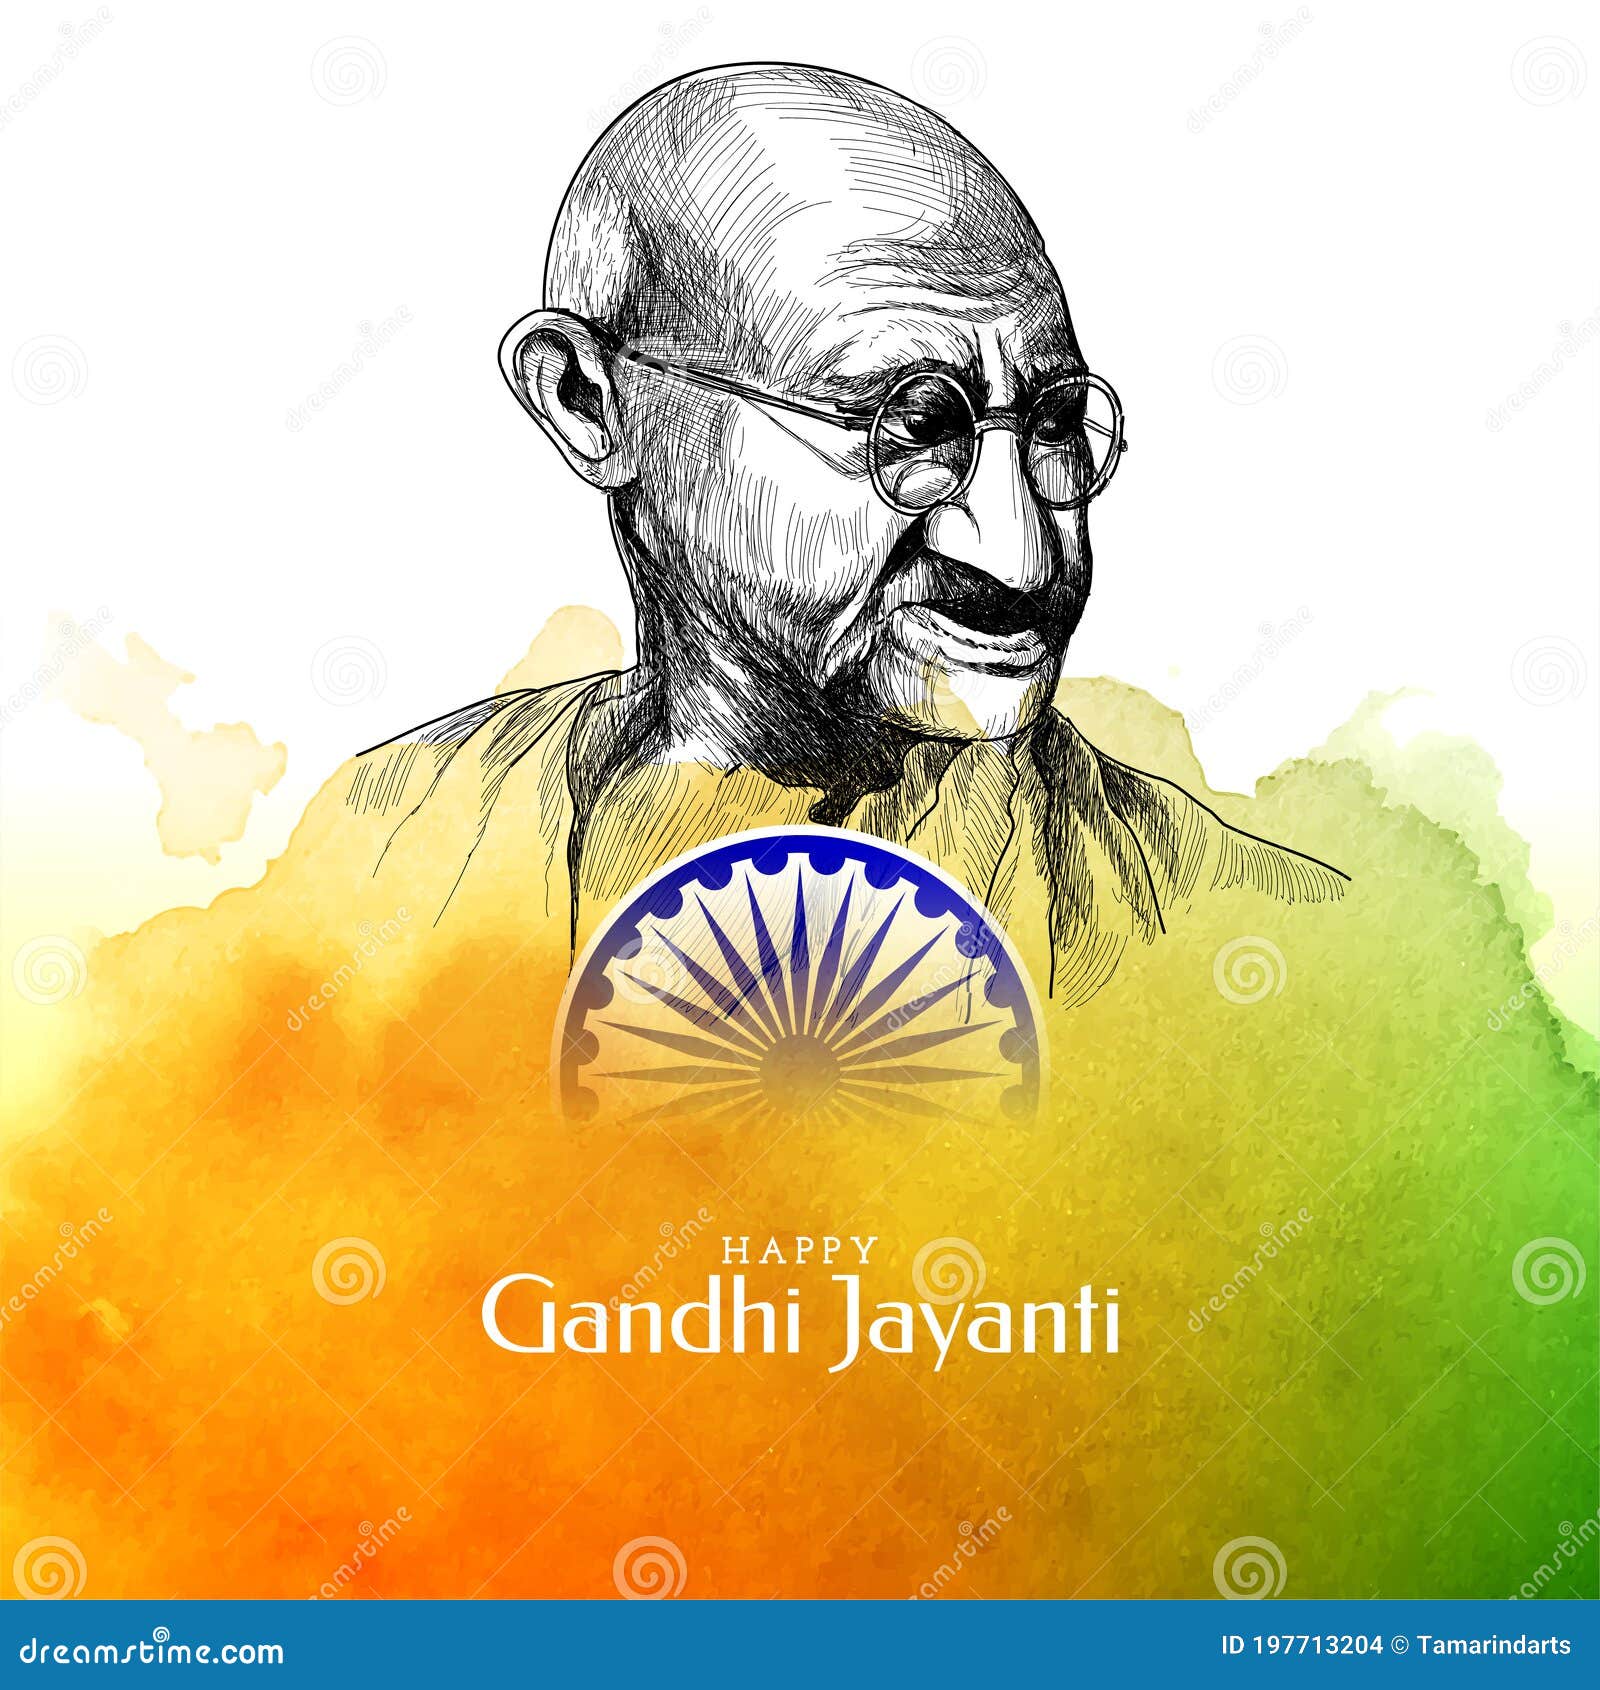 Gandhi Jayanti Celebration Background with Indian Flag Theme Editorial  Stock Image - Illustration of india, flag: 197713204